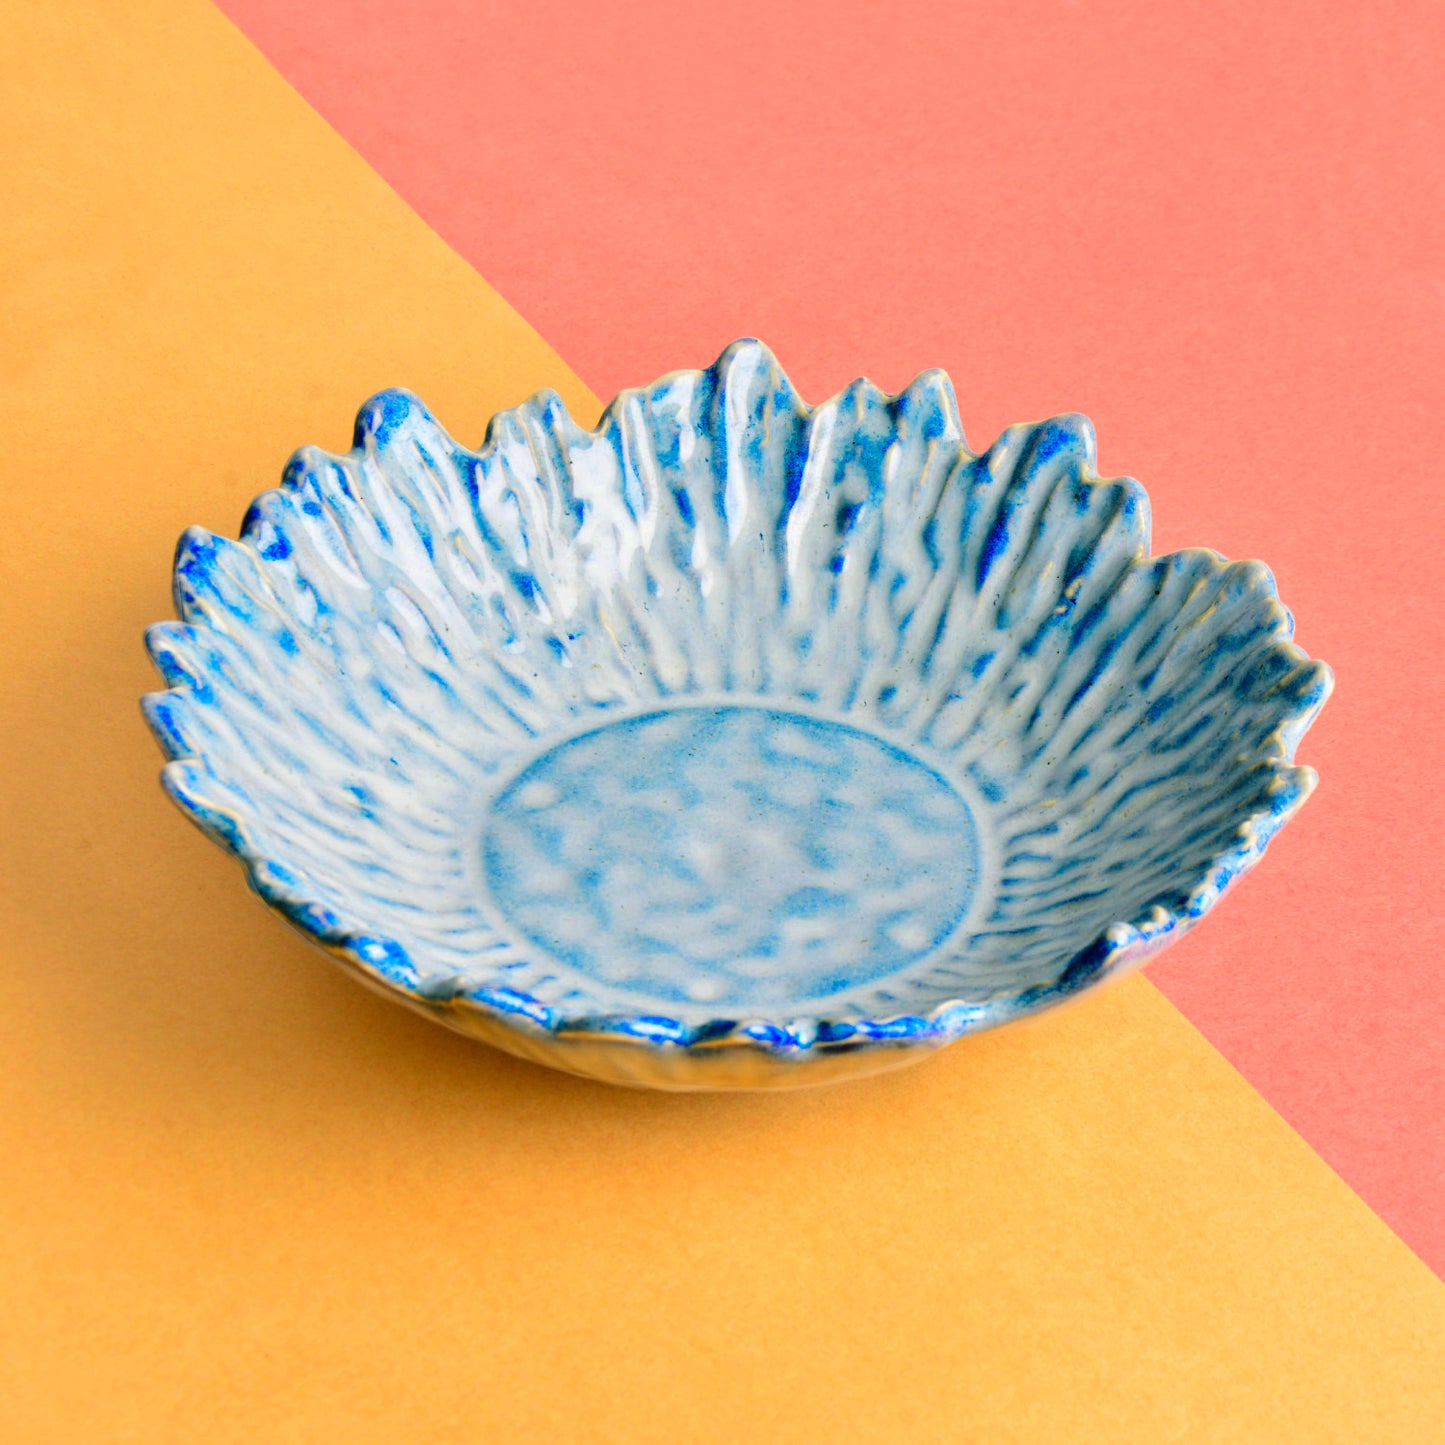 ceramic Bowl